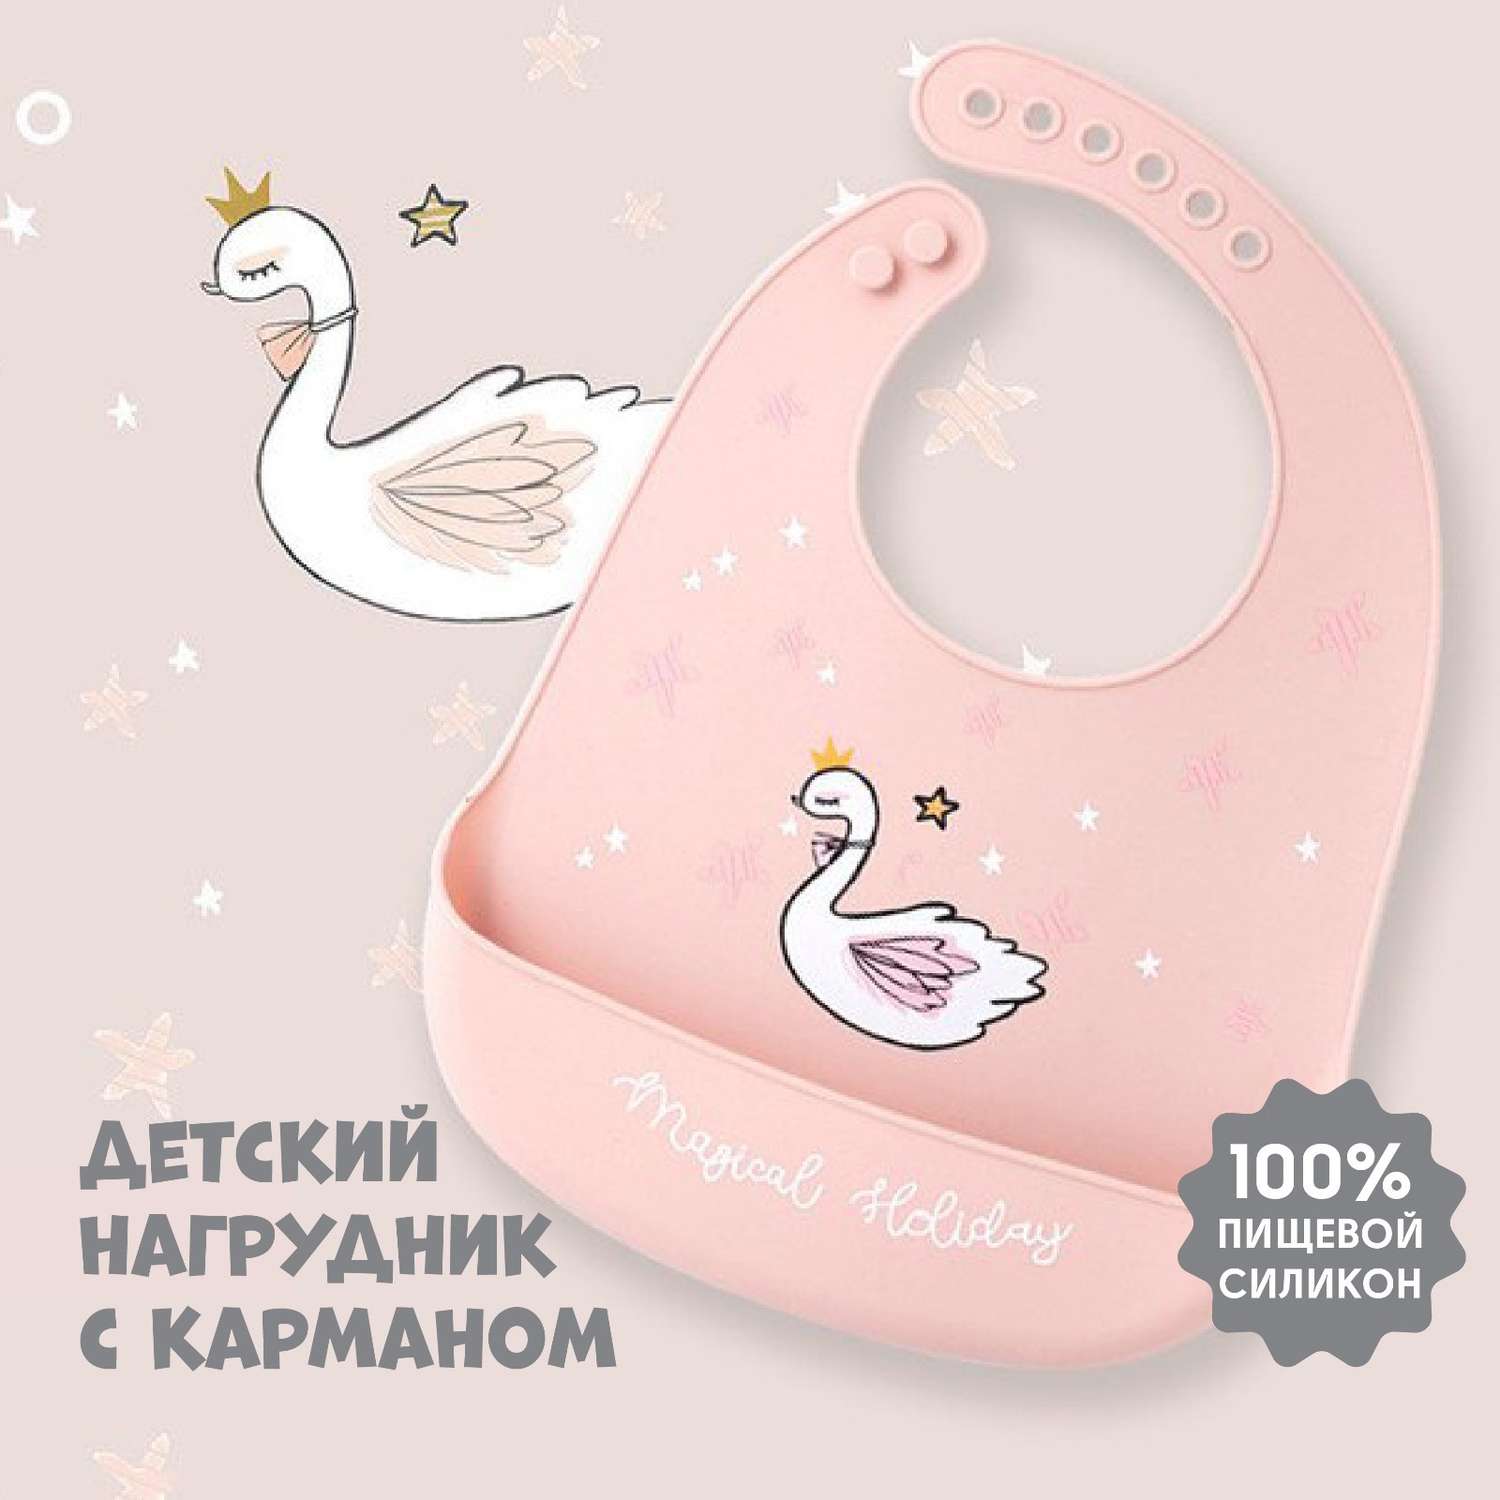 Нагрудник Mum and Baby для кормления «Лебедь» силиконовый с карманом цвет розовый - фото 1